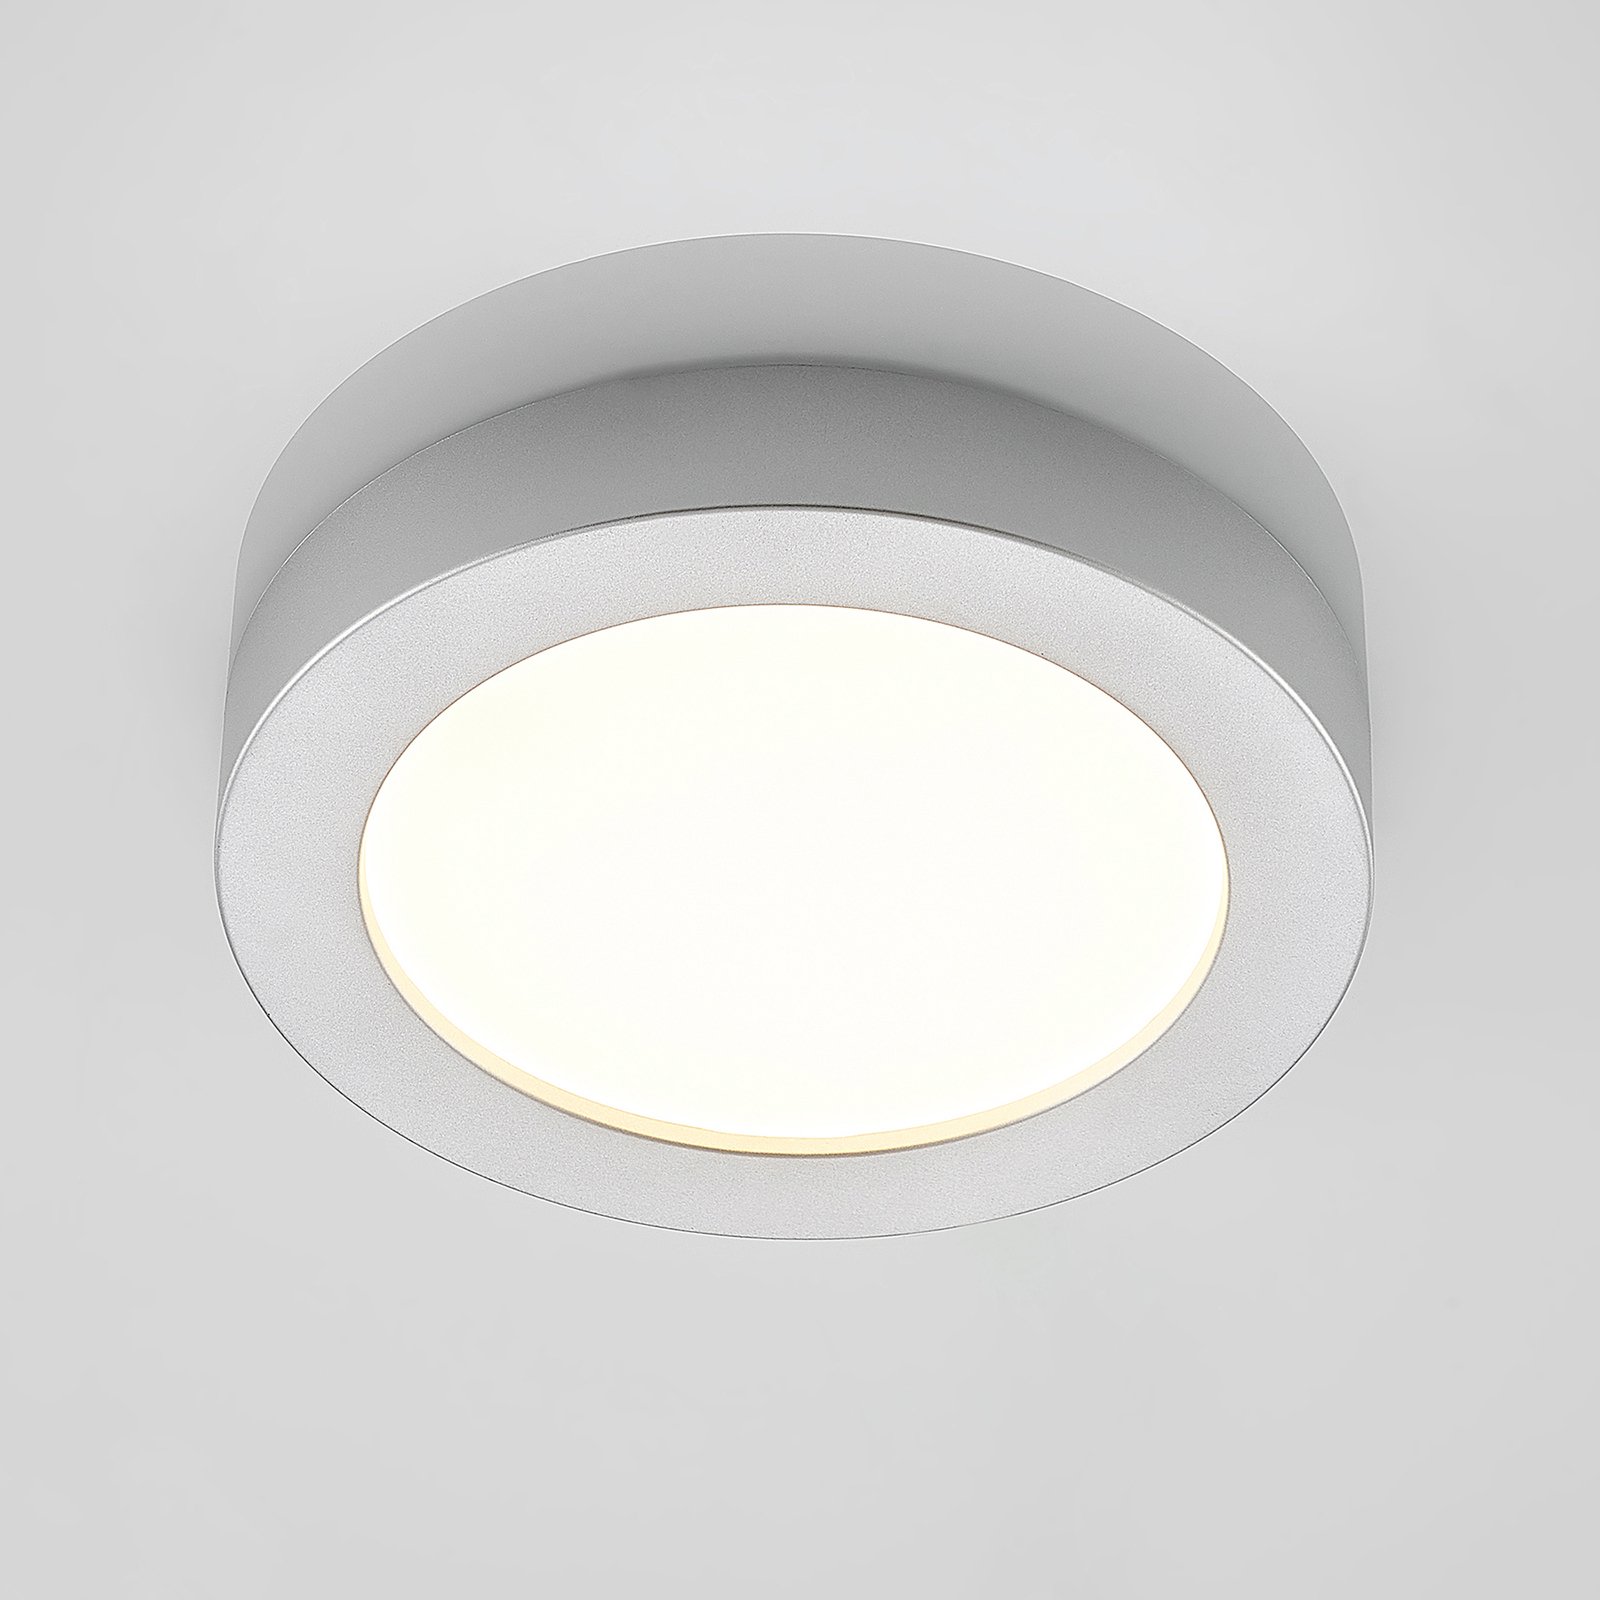 Prios LED mennyezeti lámpa Edwina, ezüst, 22,6cm, 2db, fényerőszabályozható